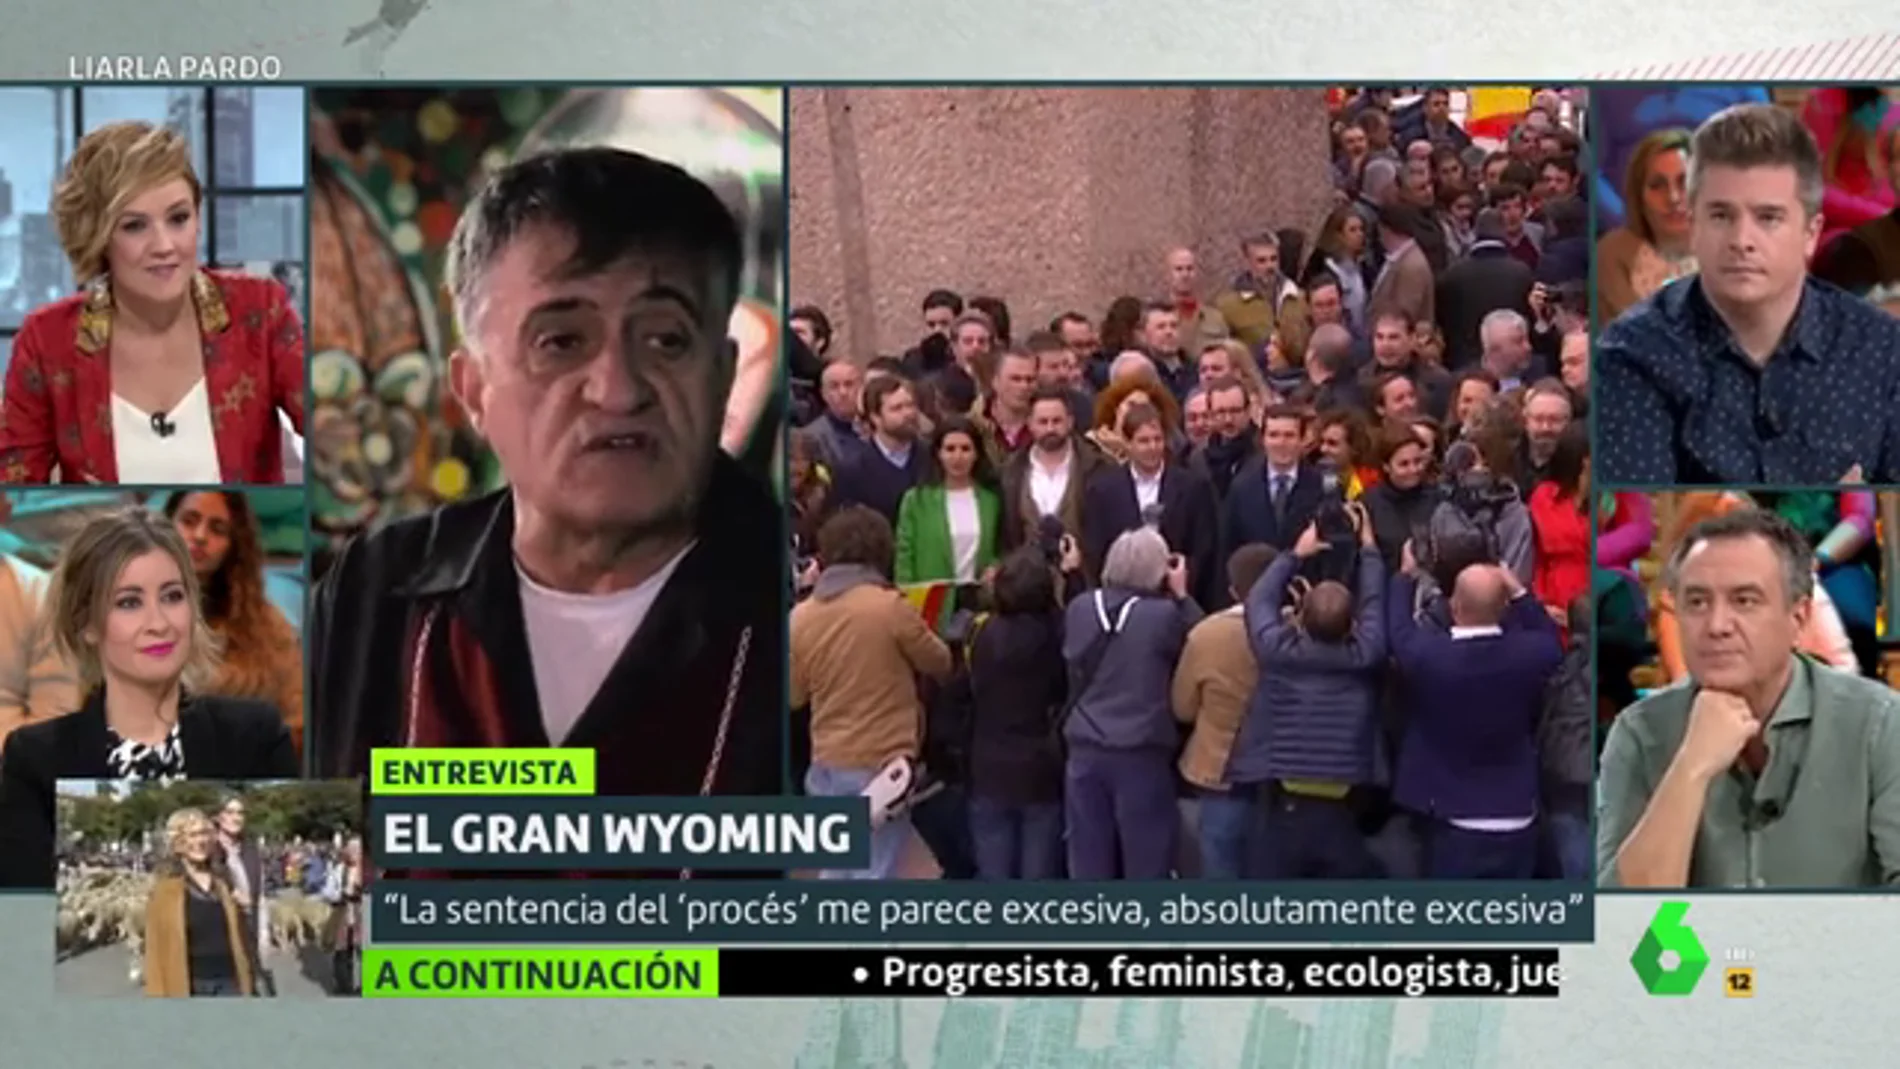 El Gran Wyoming: "Cuando me gritan 'Viva España', están diciendo 'puto rojo'"